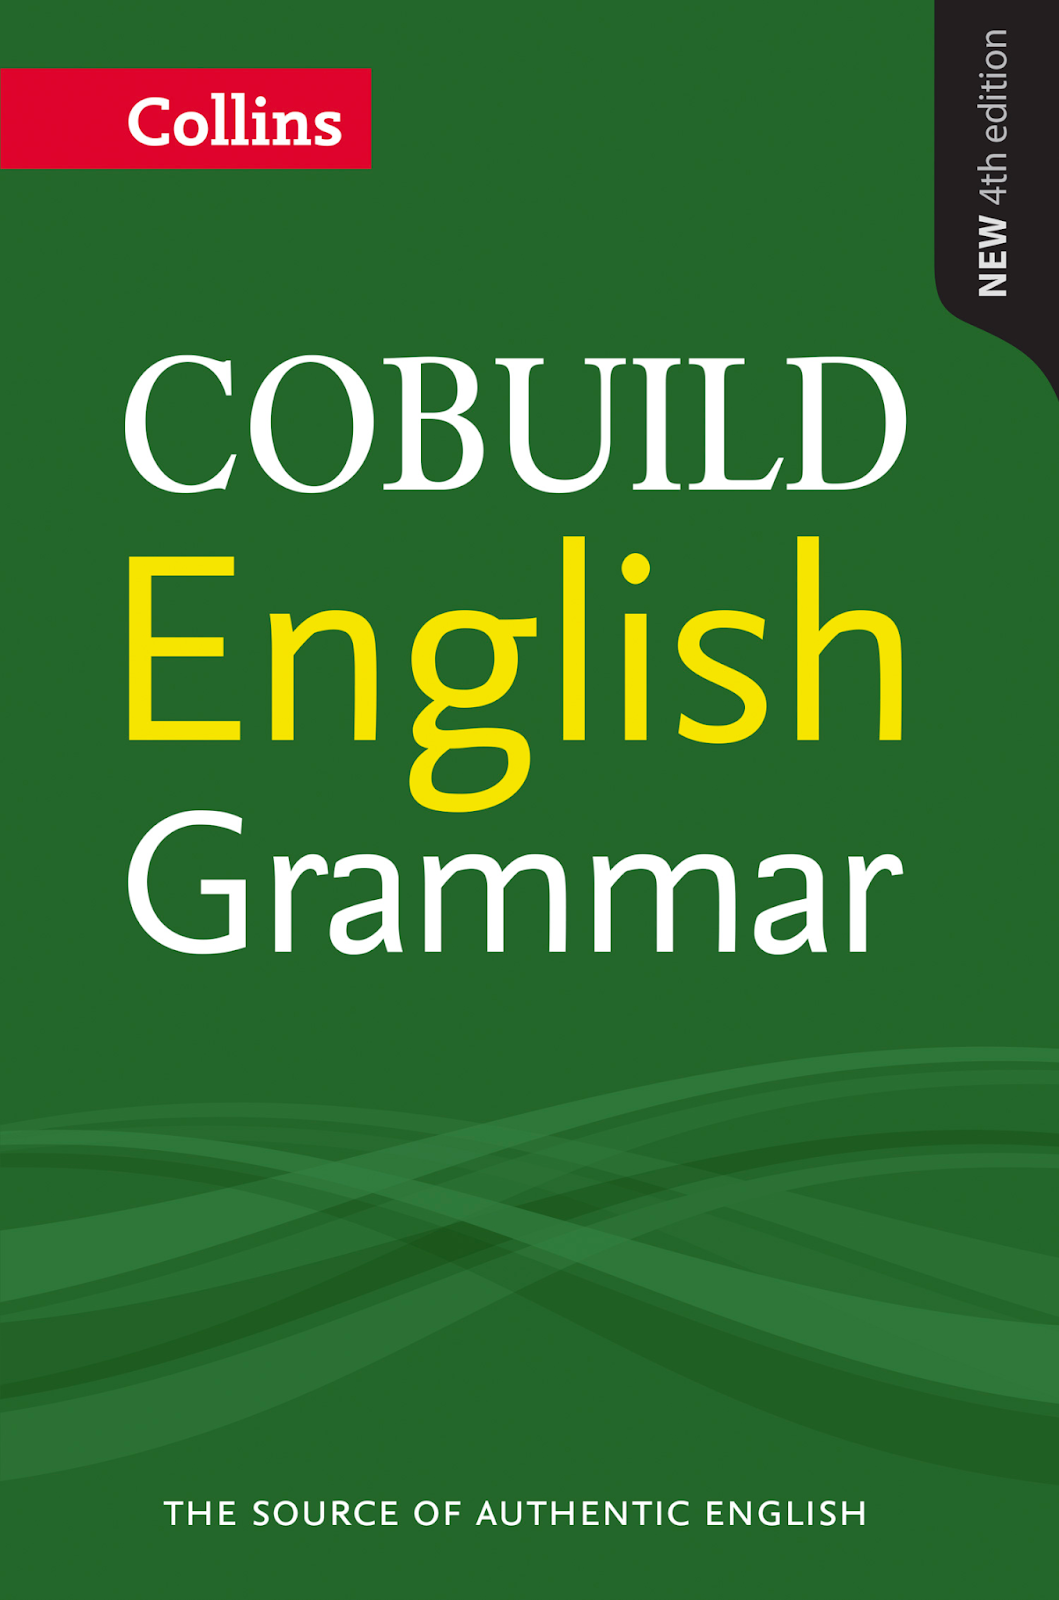 Tài liệu IELTS - Collins COBUILD Grammar